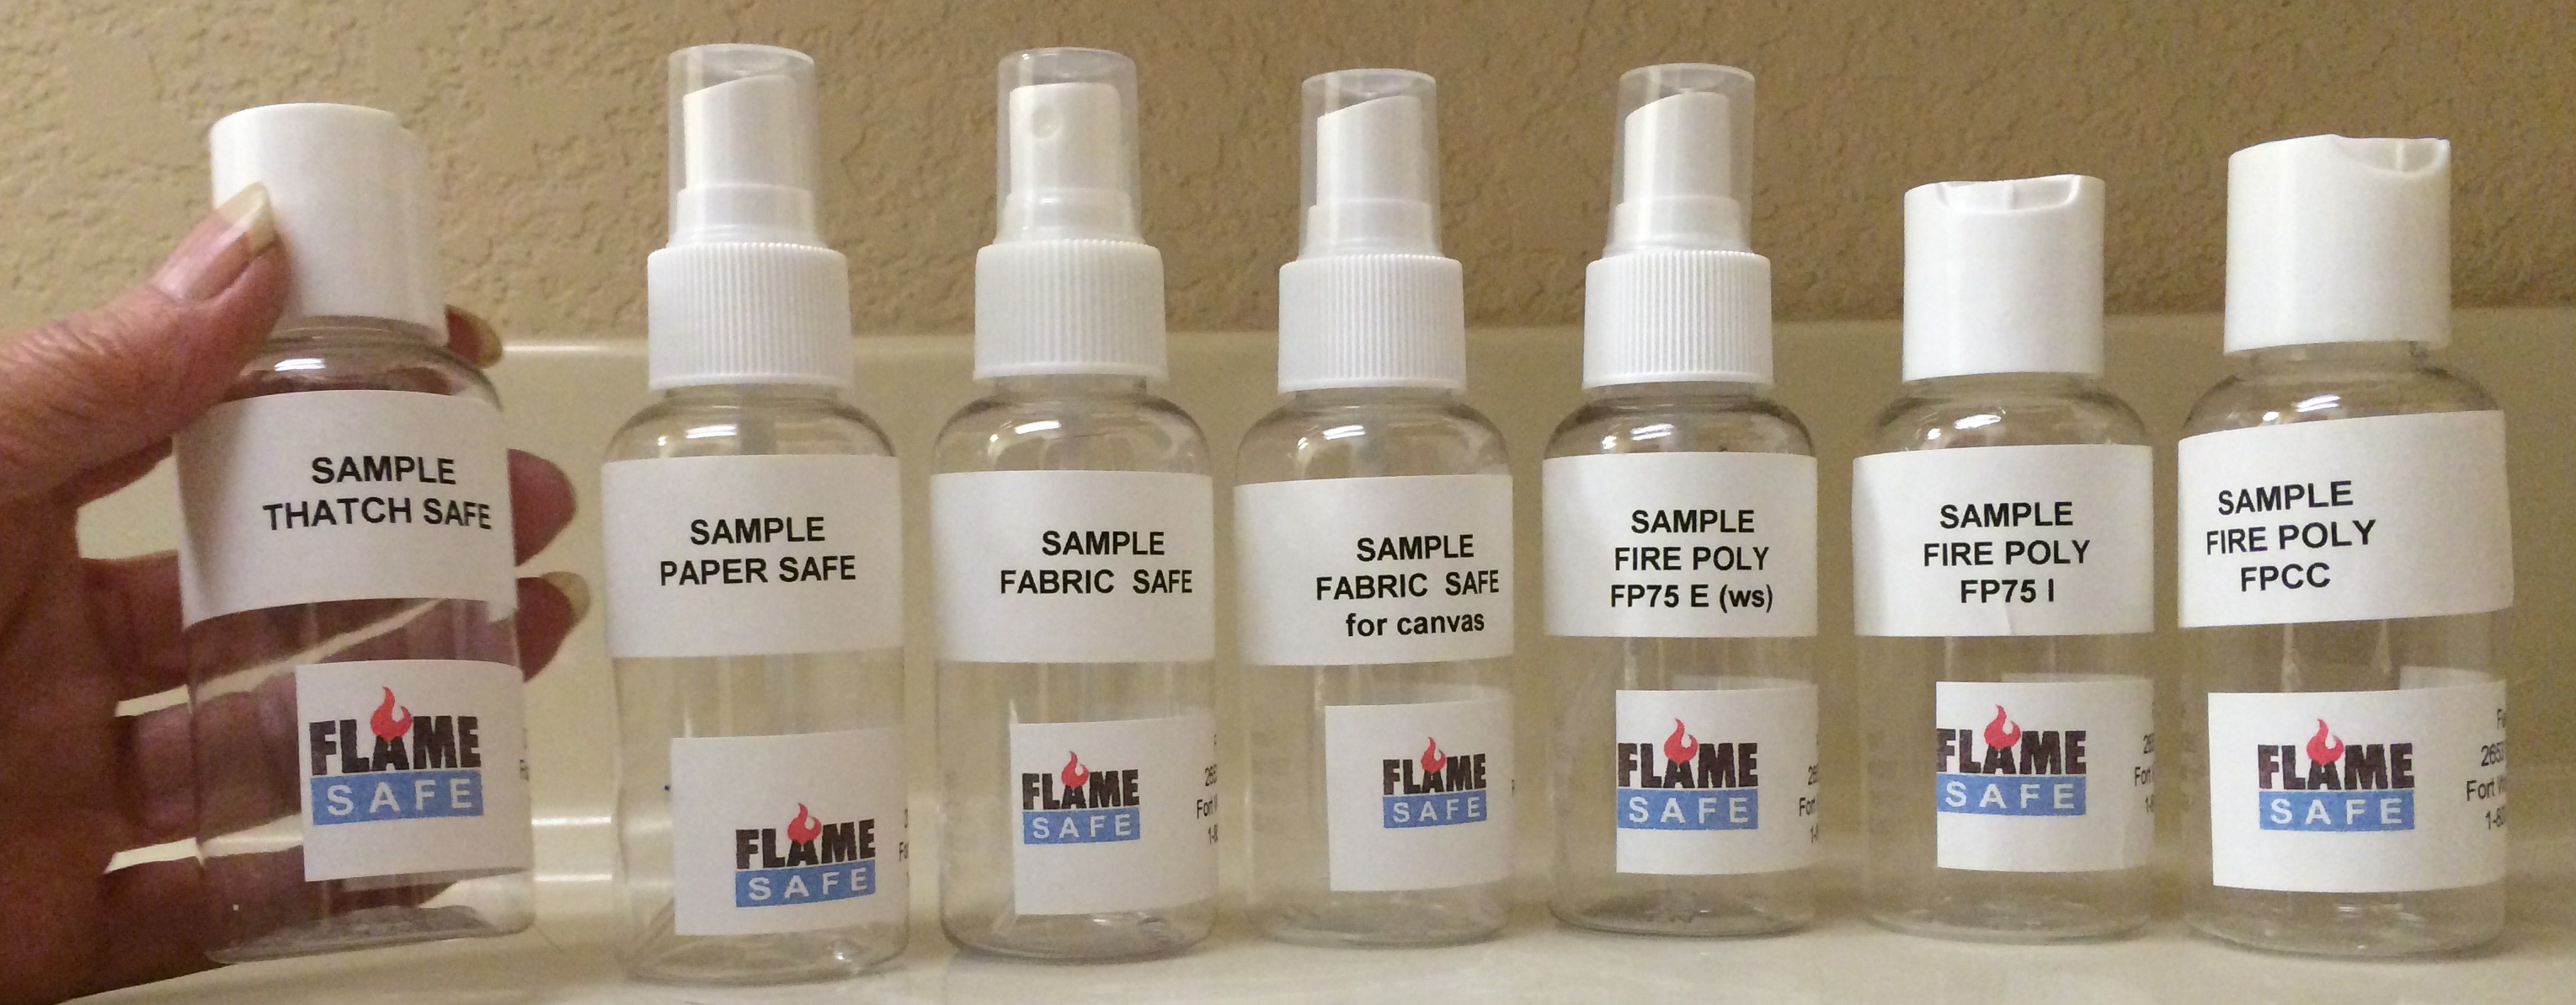 sample 3 0z bottles fire retardants